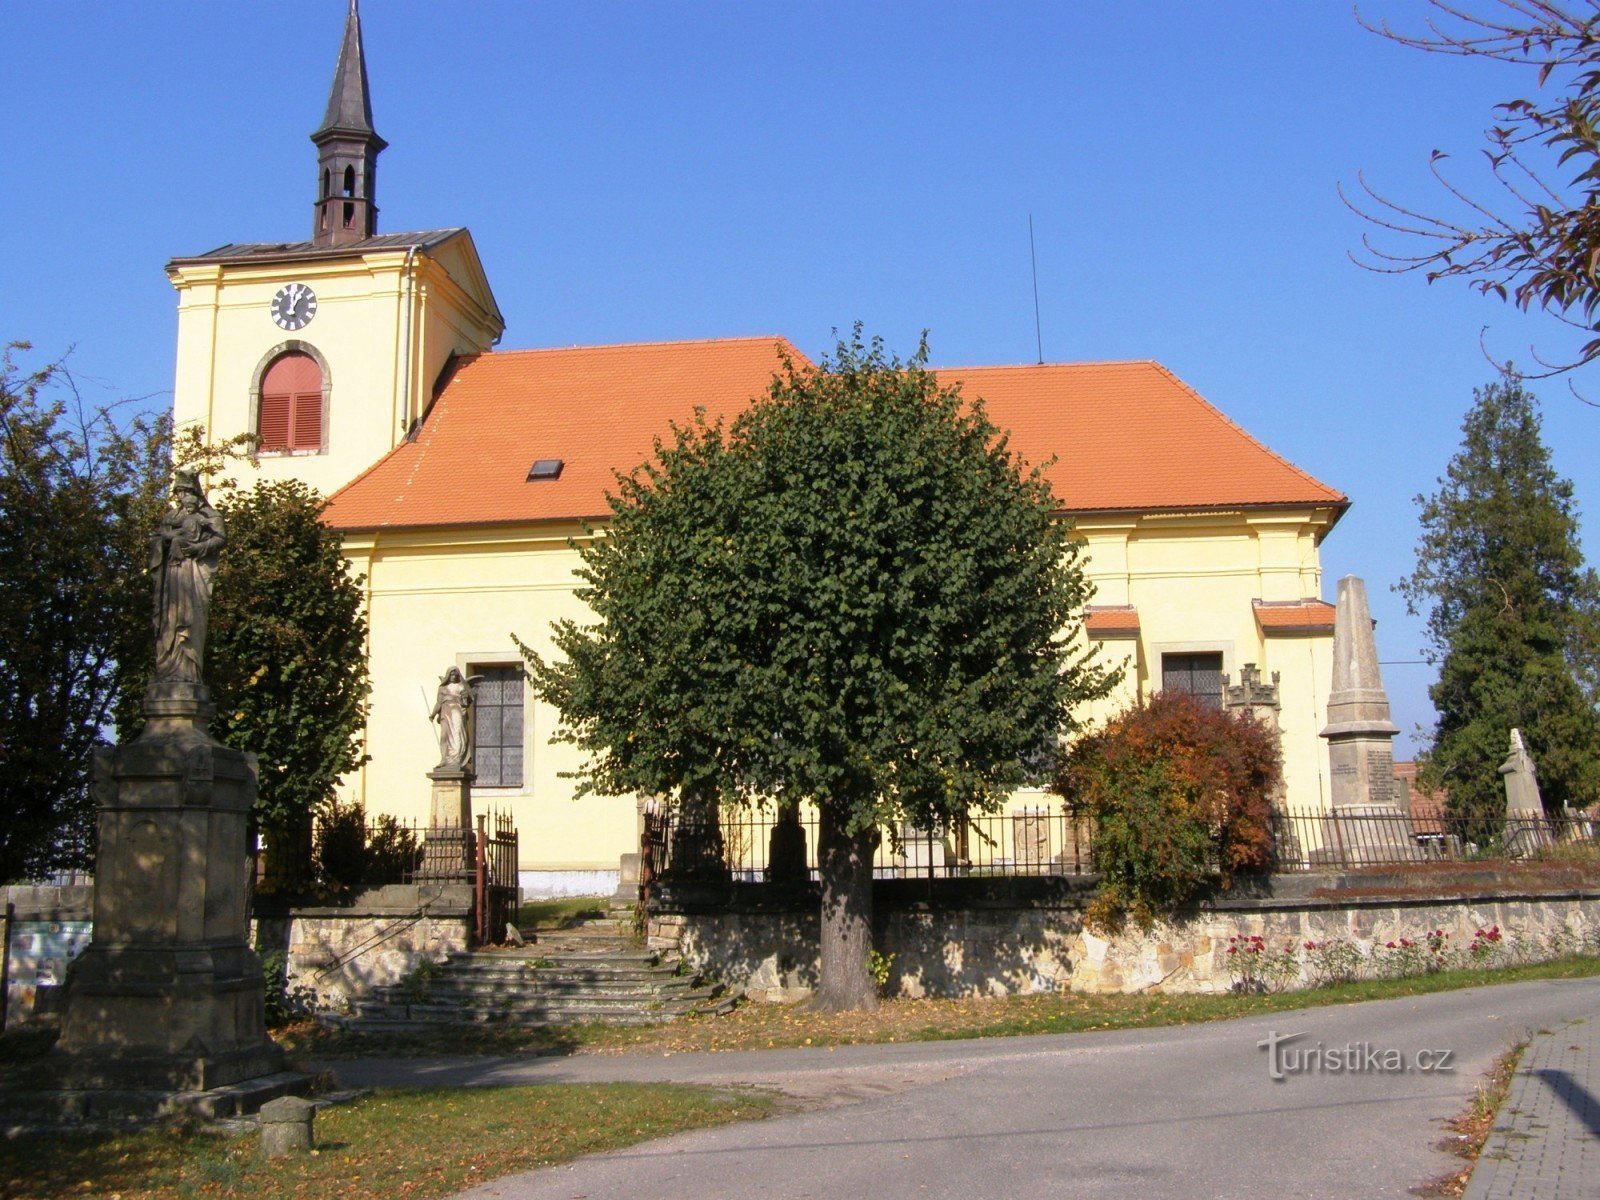 Probluz - Alla helgons kyrka